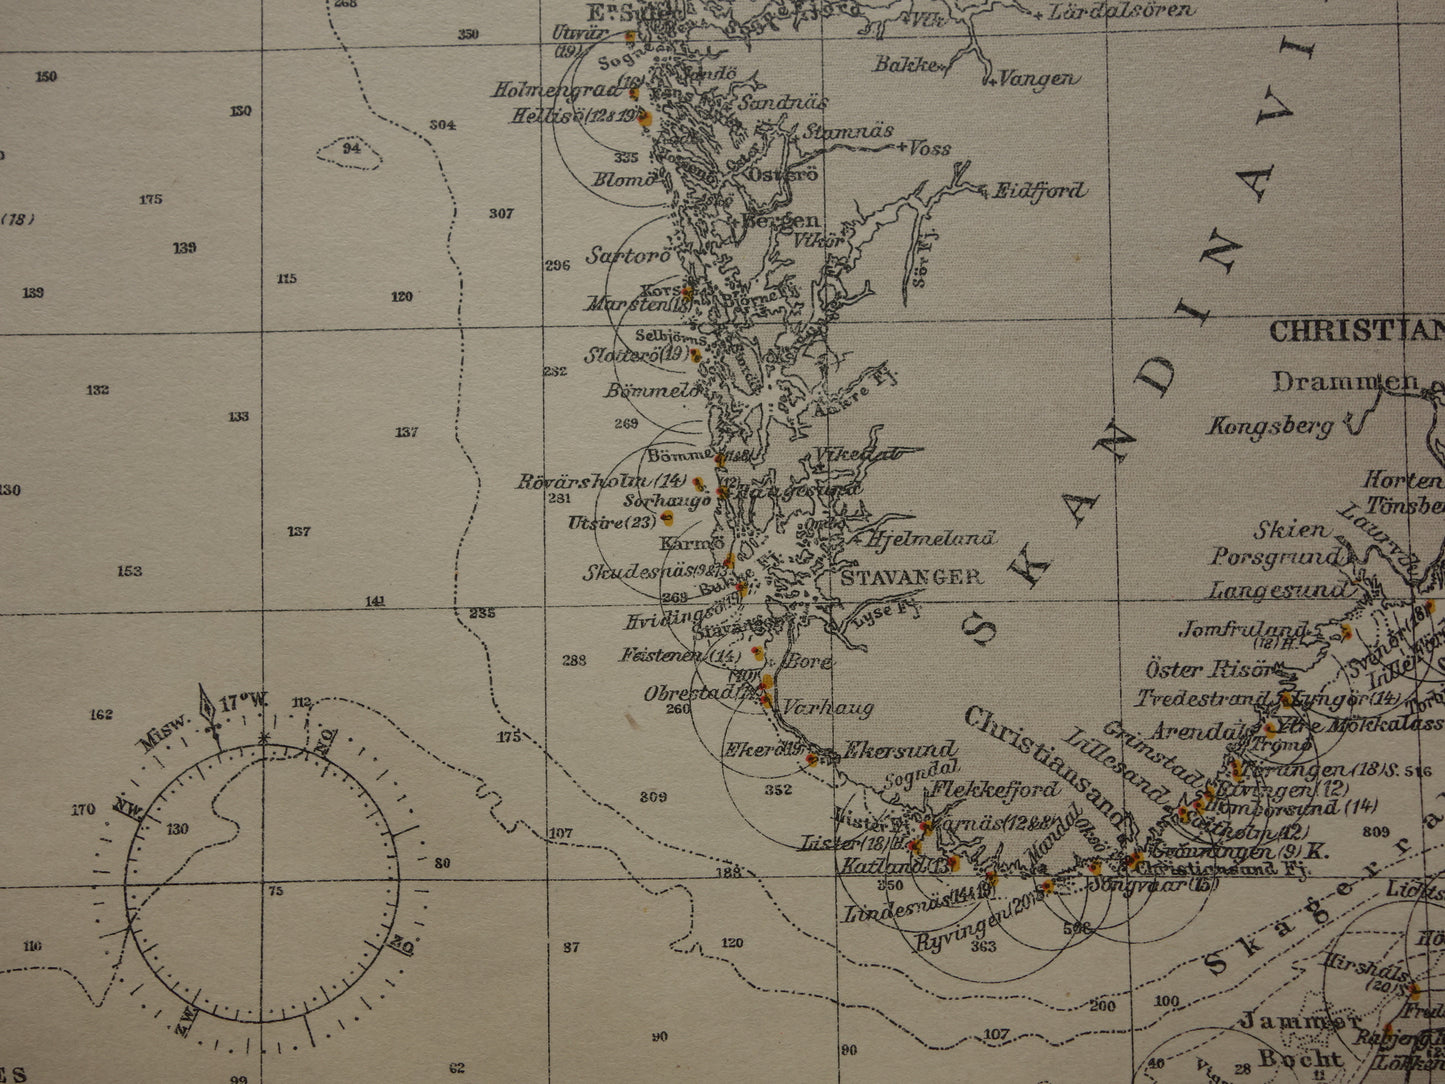 NOORDZEE oude zeekaart uit 1920 originele antieke Nederlandse kaart van de Noordzee